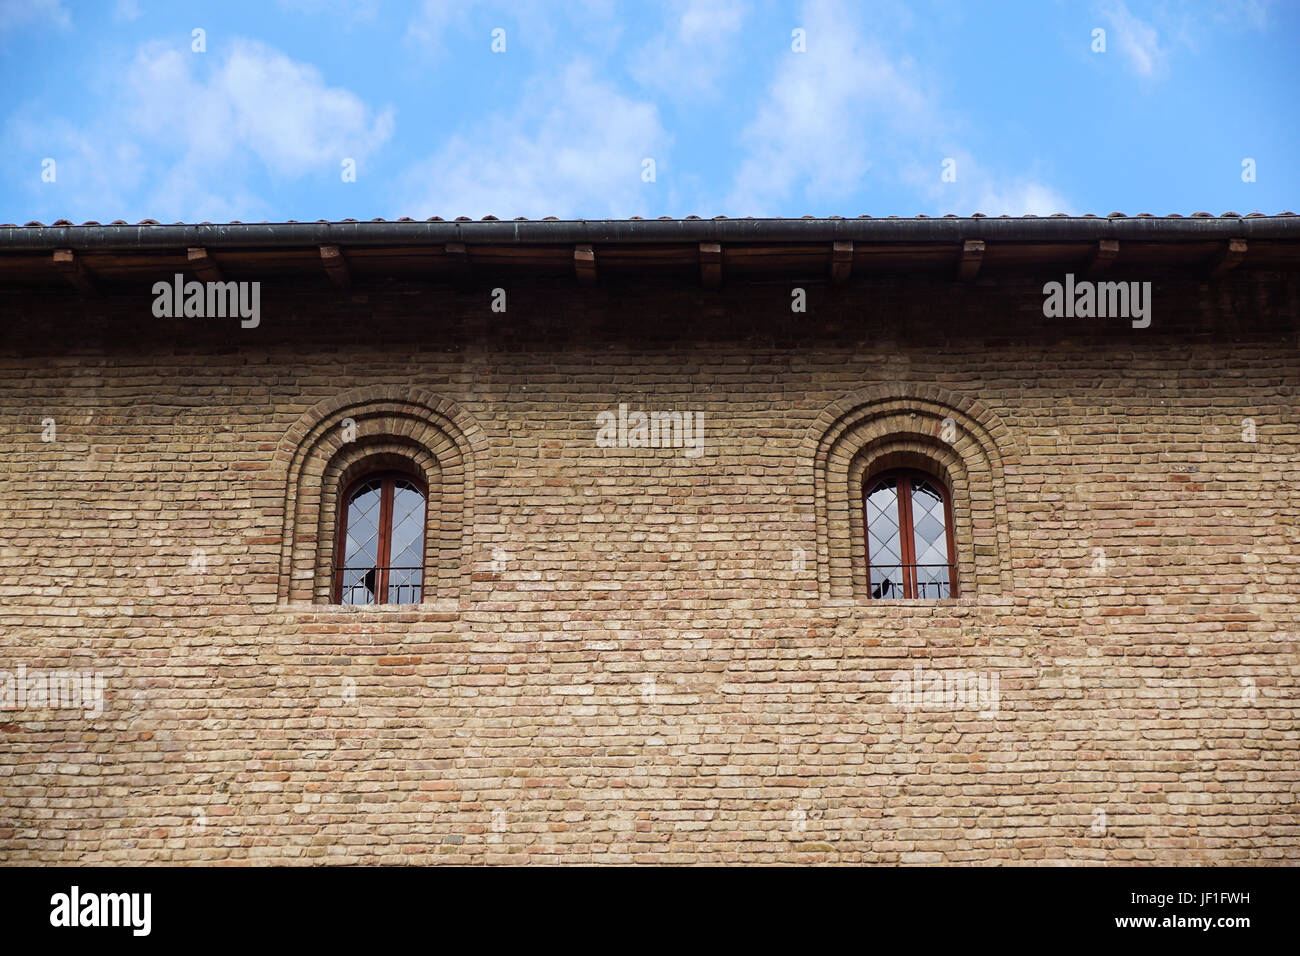 Finestra del castello in stile medievale. Doppia finestra ad arco su una facciata del muro medievale. Biforium - finestra antica con la colonna, vecchia architettura elemento del romano e gotico. Foto Stock